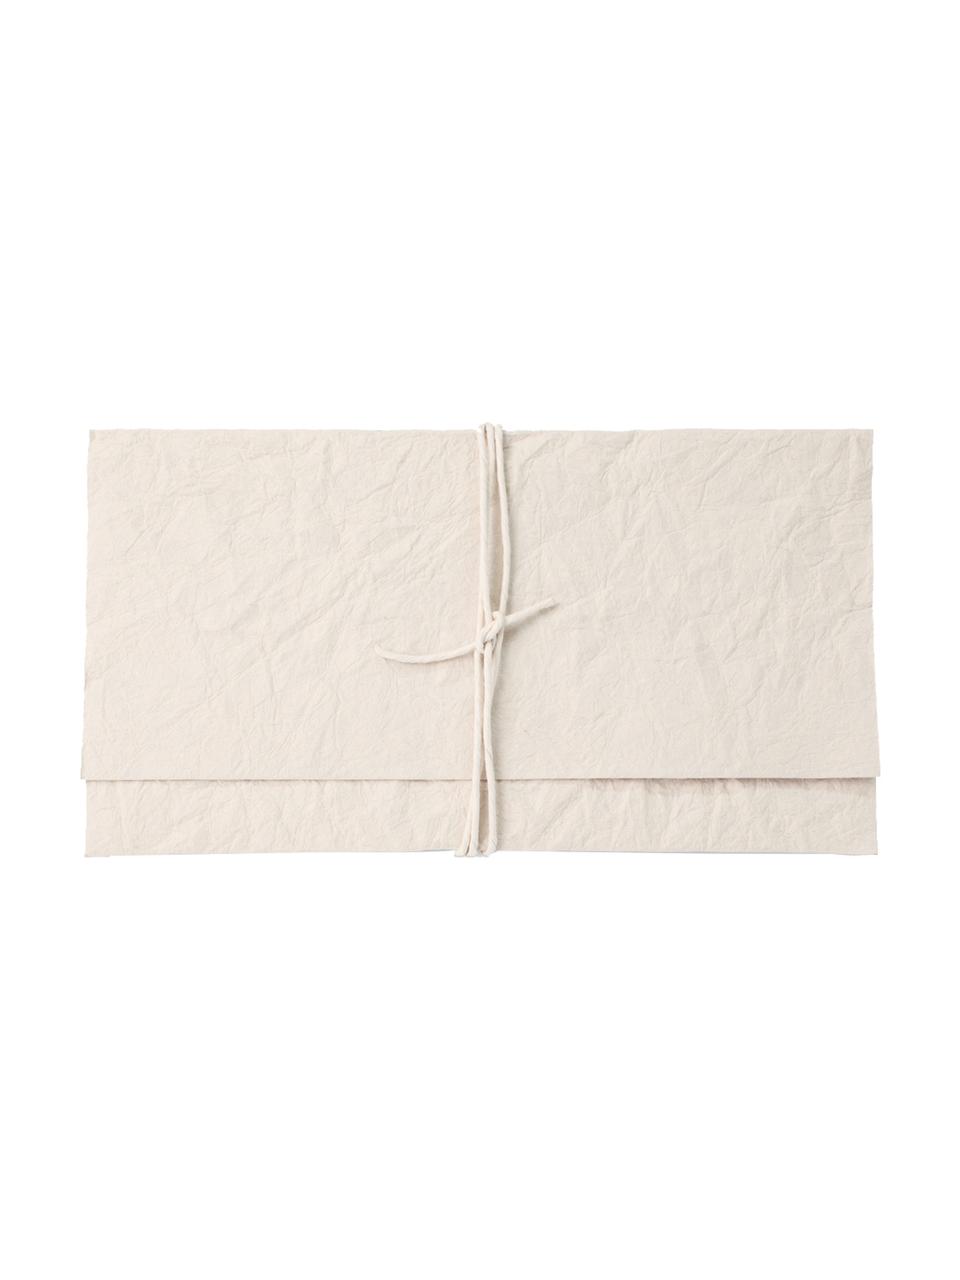 Enveloppe Soft, Papier, Crèmekleurig, 27 x 15 cm